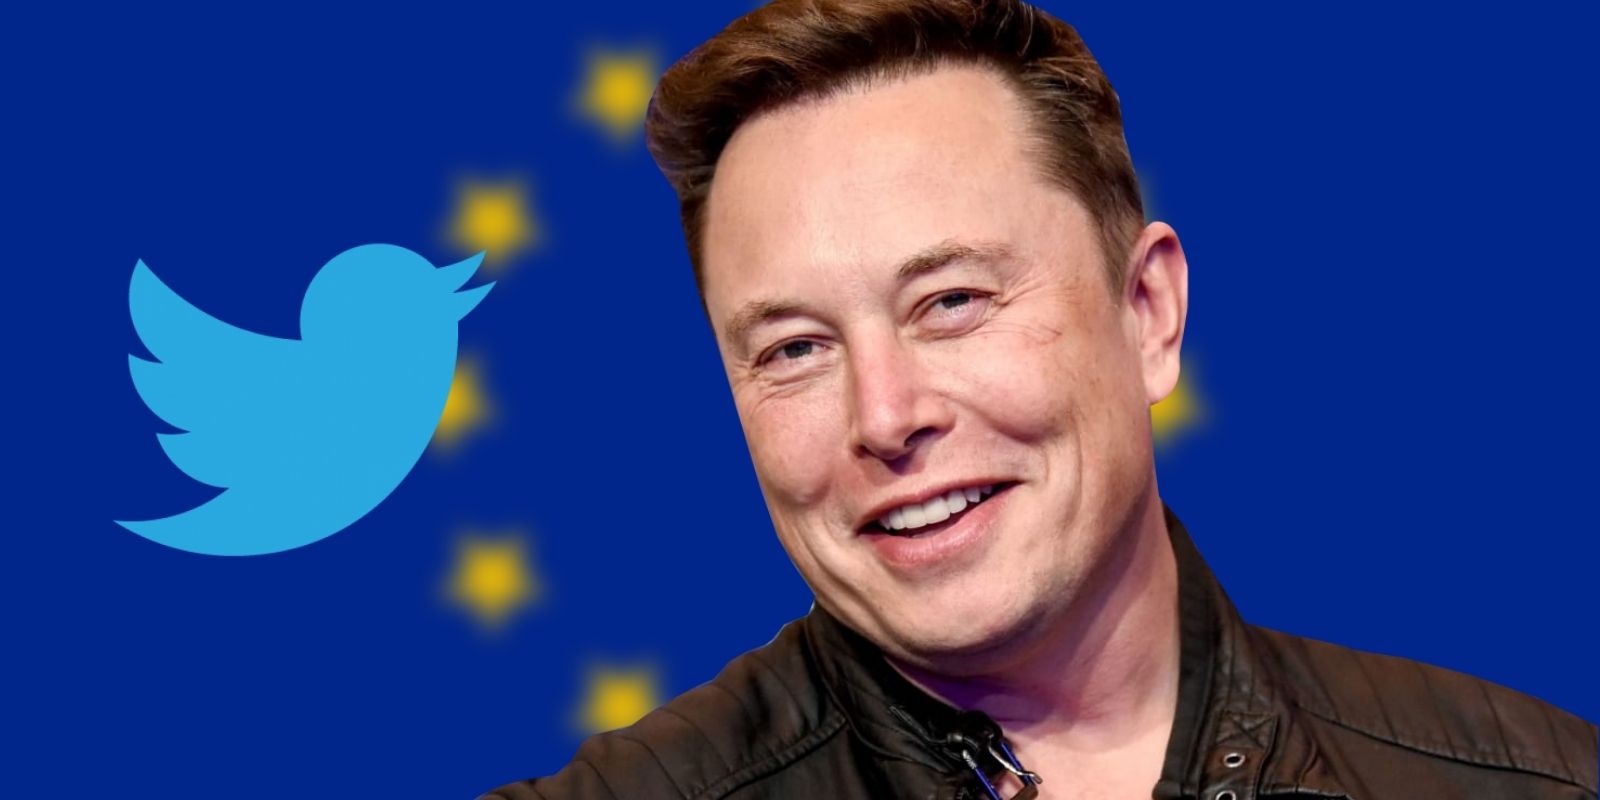 Uniunea Europeană îl avertizează pe Elon Musk: ”Elon, există reguli. Nu normele tale se vor aplica aici”